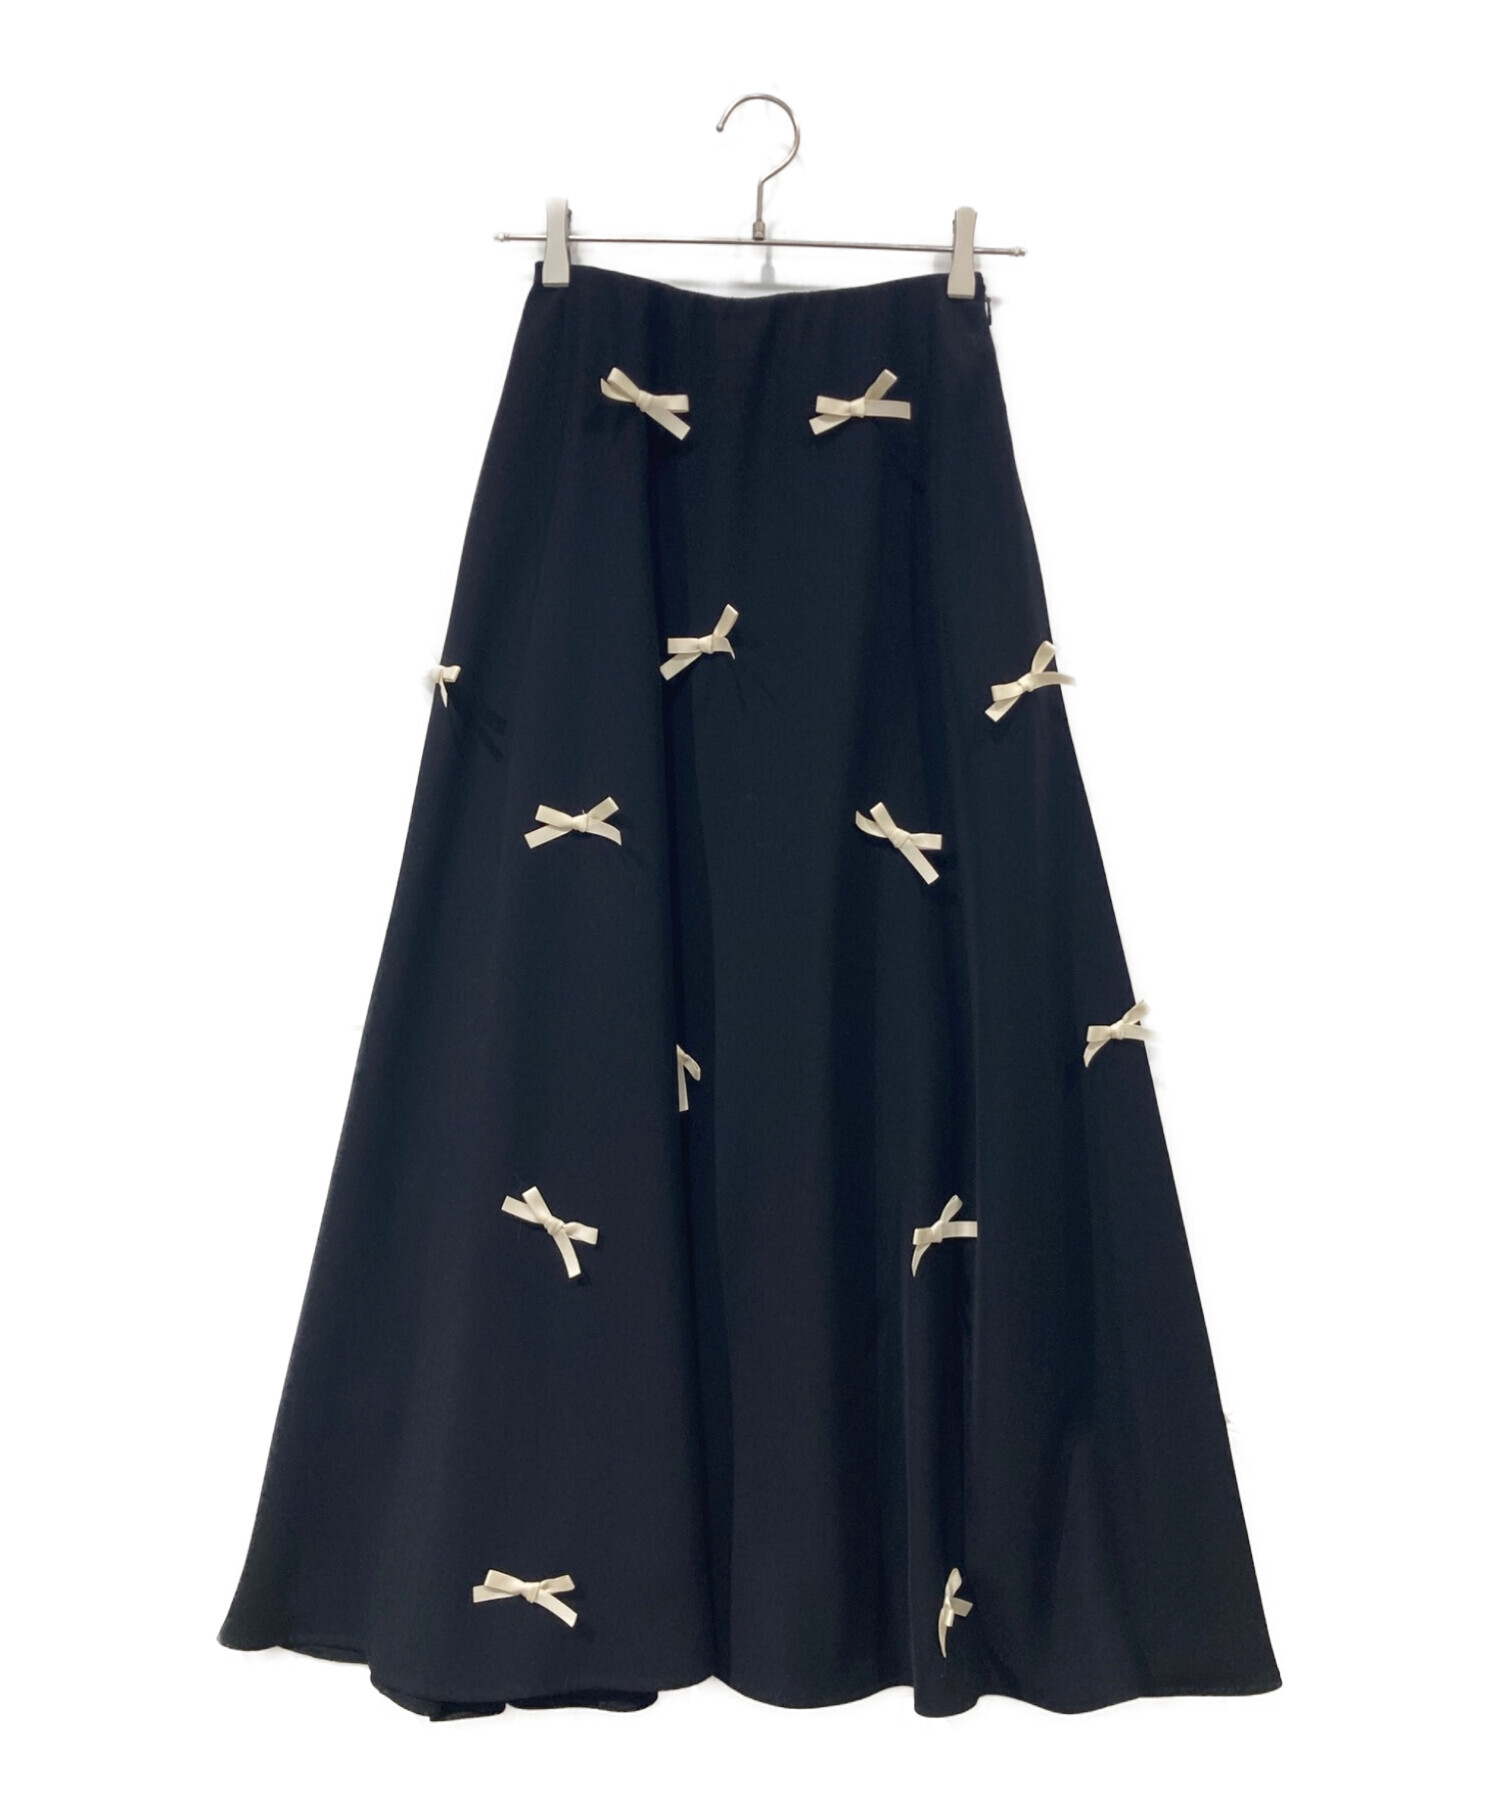 ツルバイマリコオイカワ 新品スカート サイズ36 予約購入品 - スカート